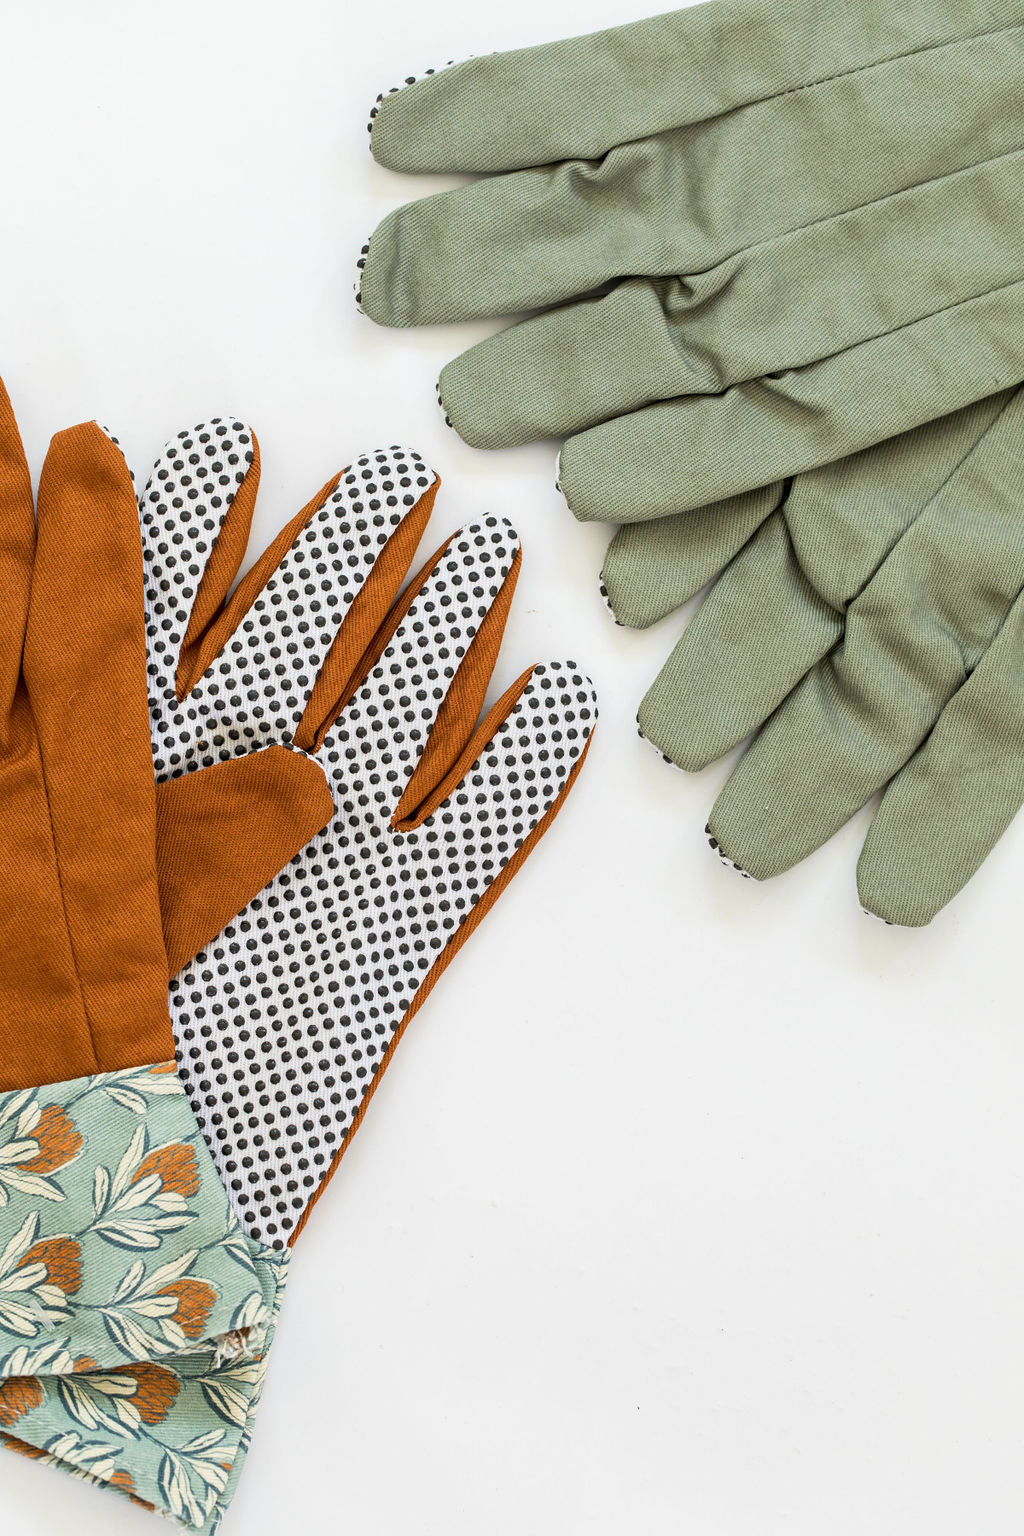 Eyre Cotton Garden Gloves Teal